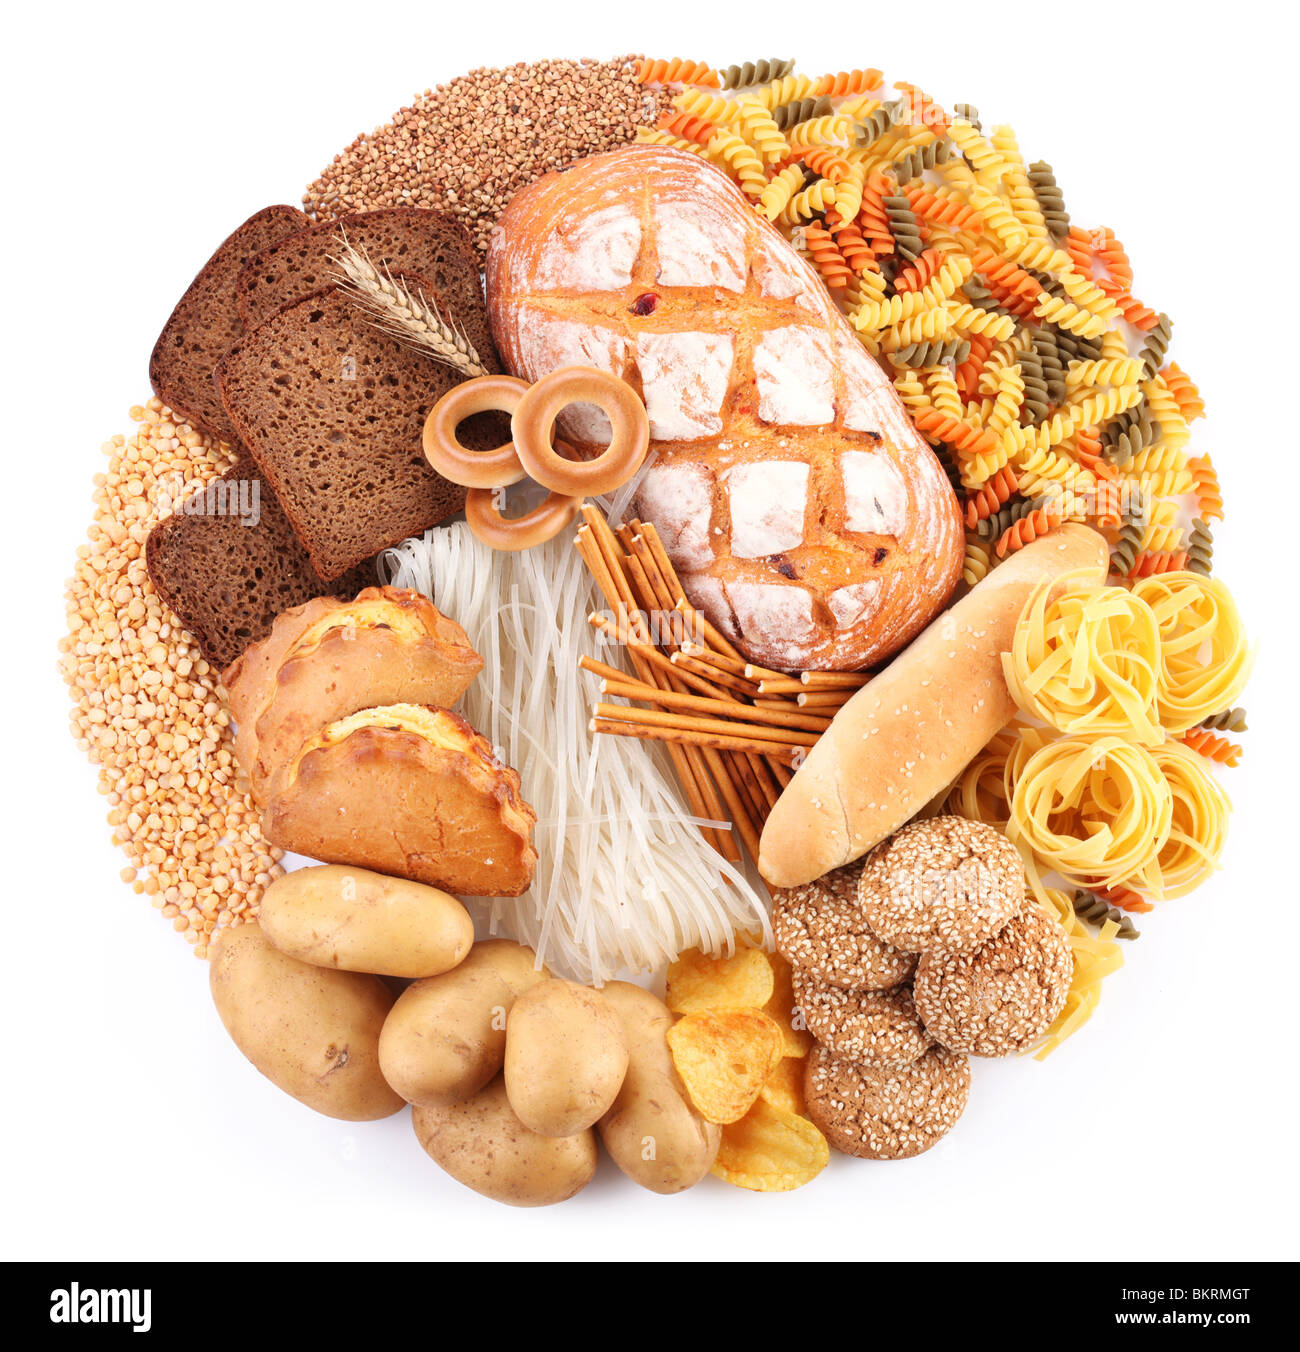 Brot und Backwaren-Produkte in Form eines Kreises. Isoliert auf weißem Hintergrund. Stockfoto